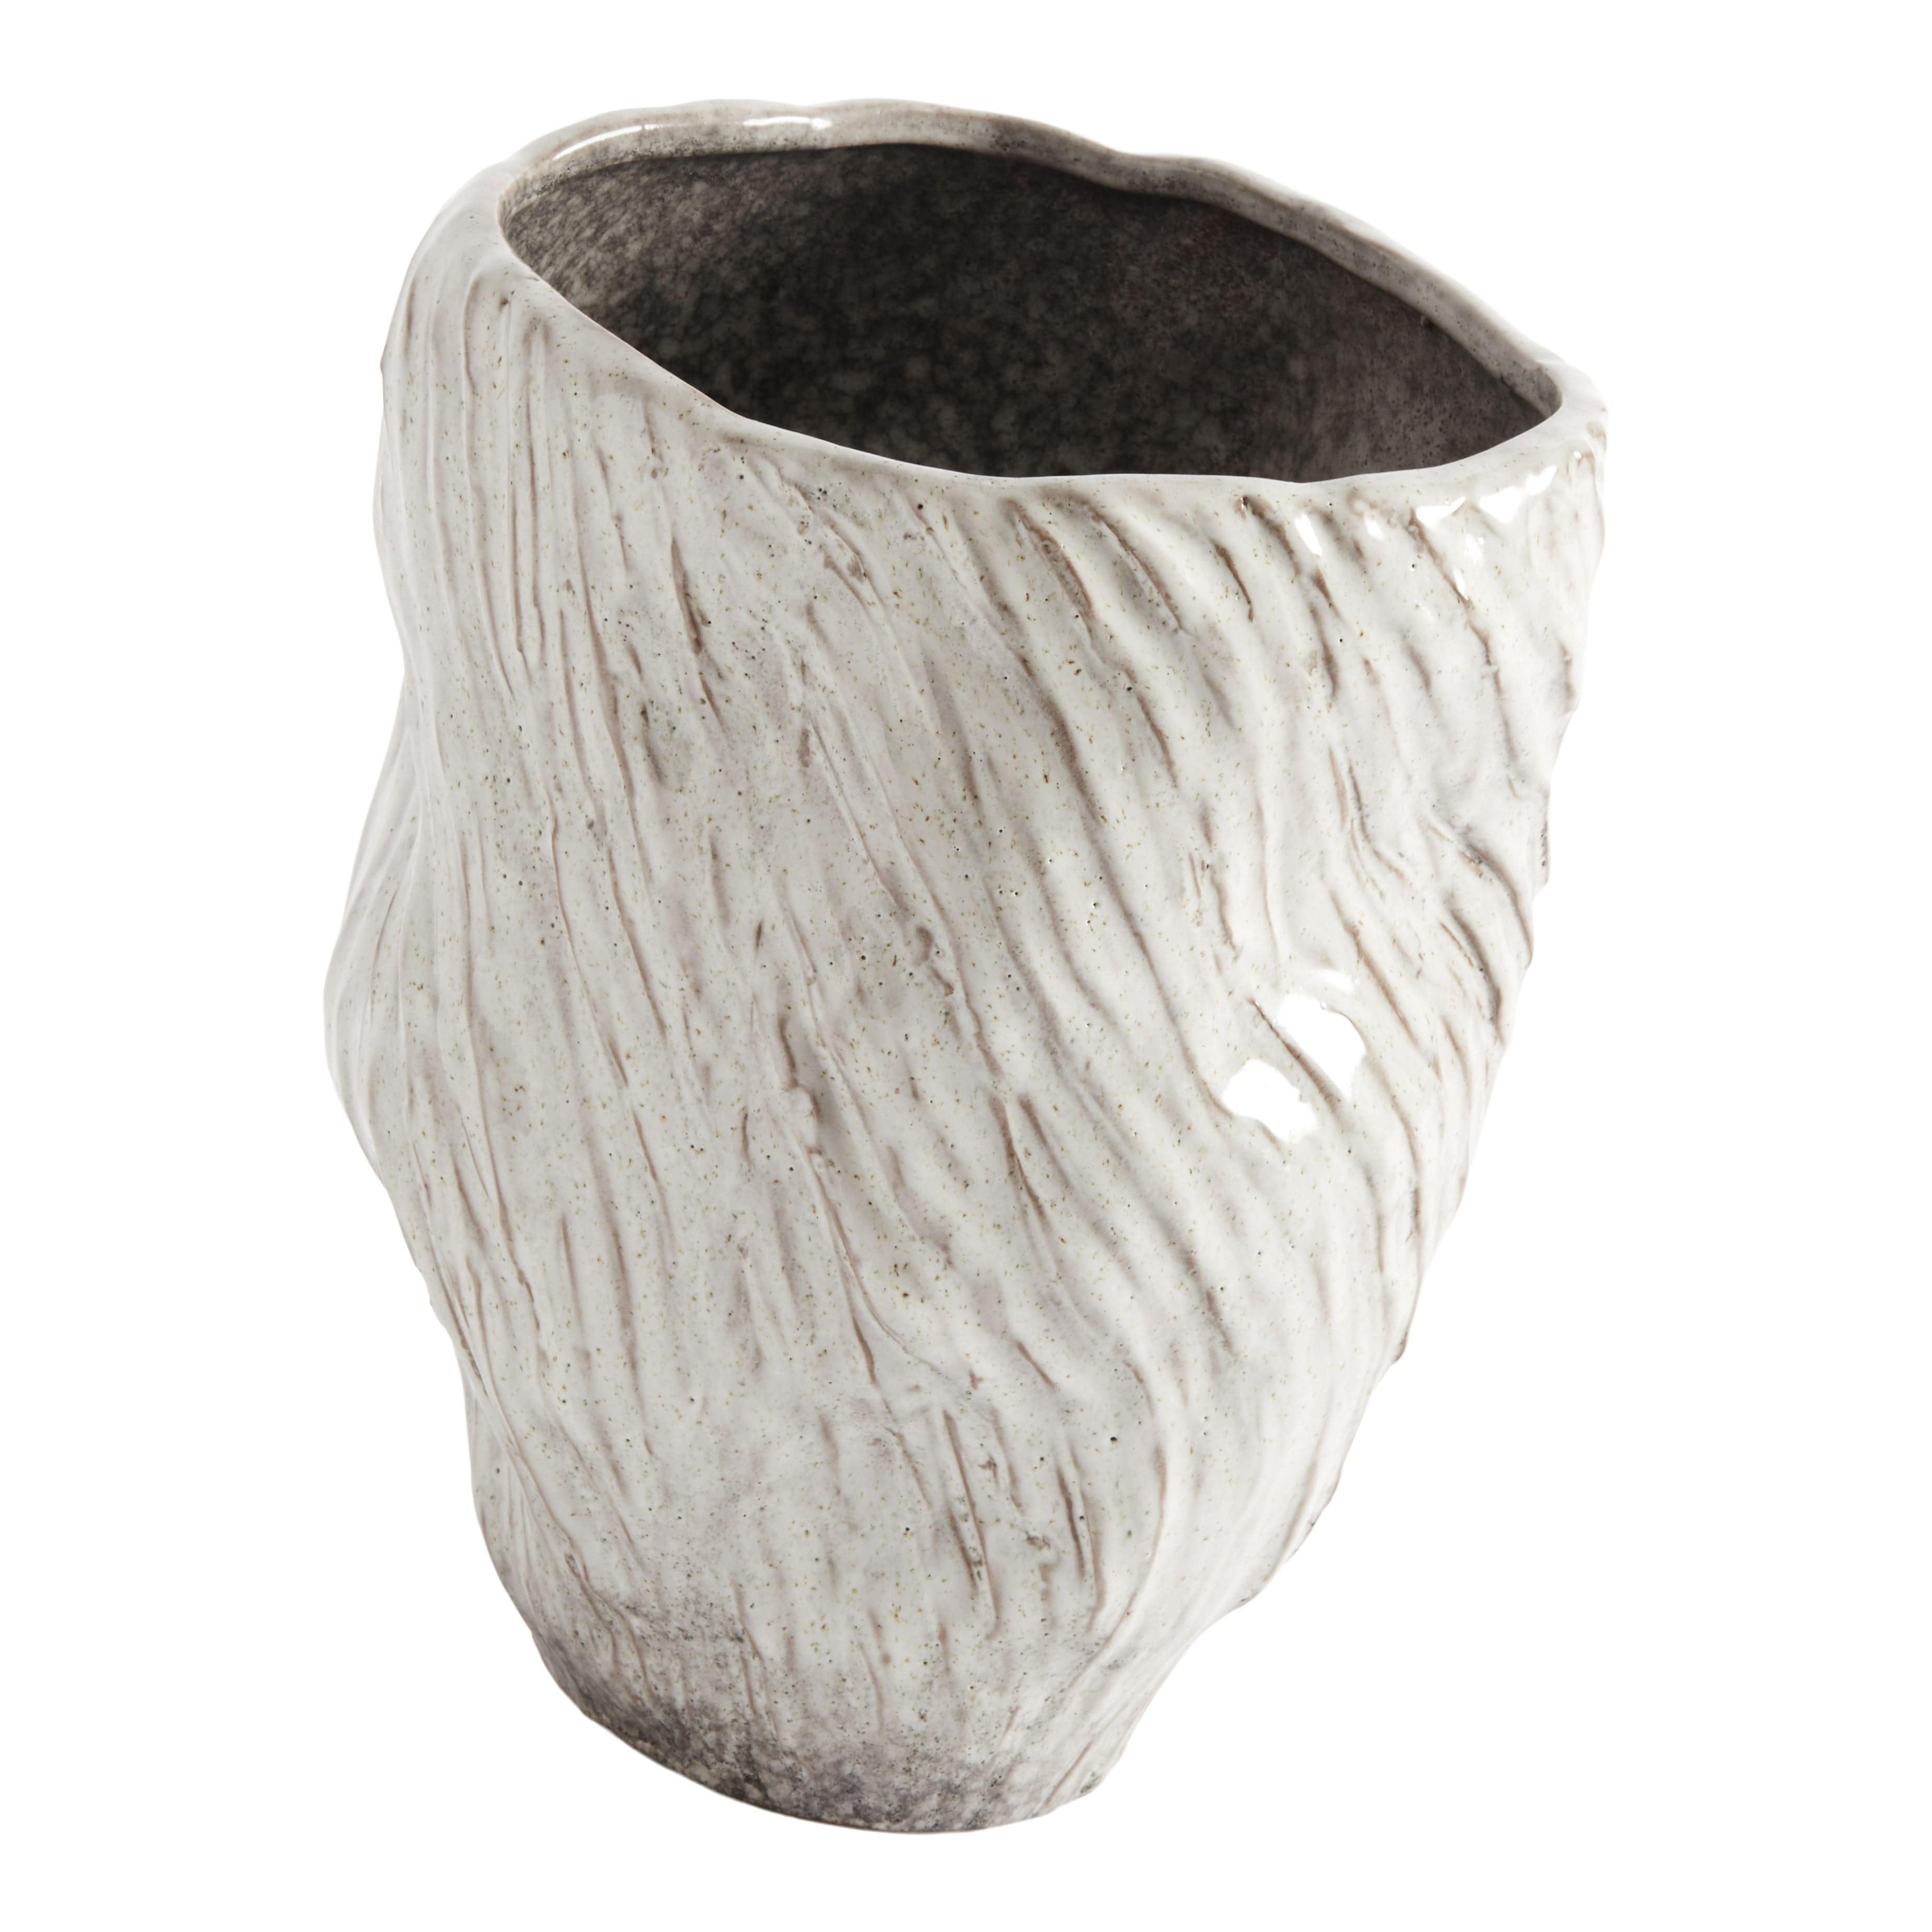 Muubs Mud Vase, Oyster